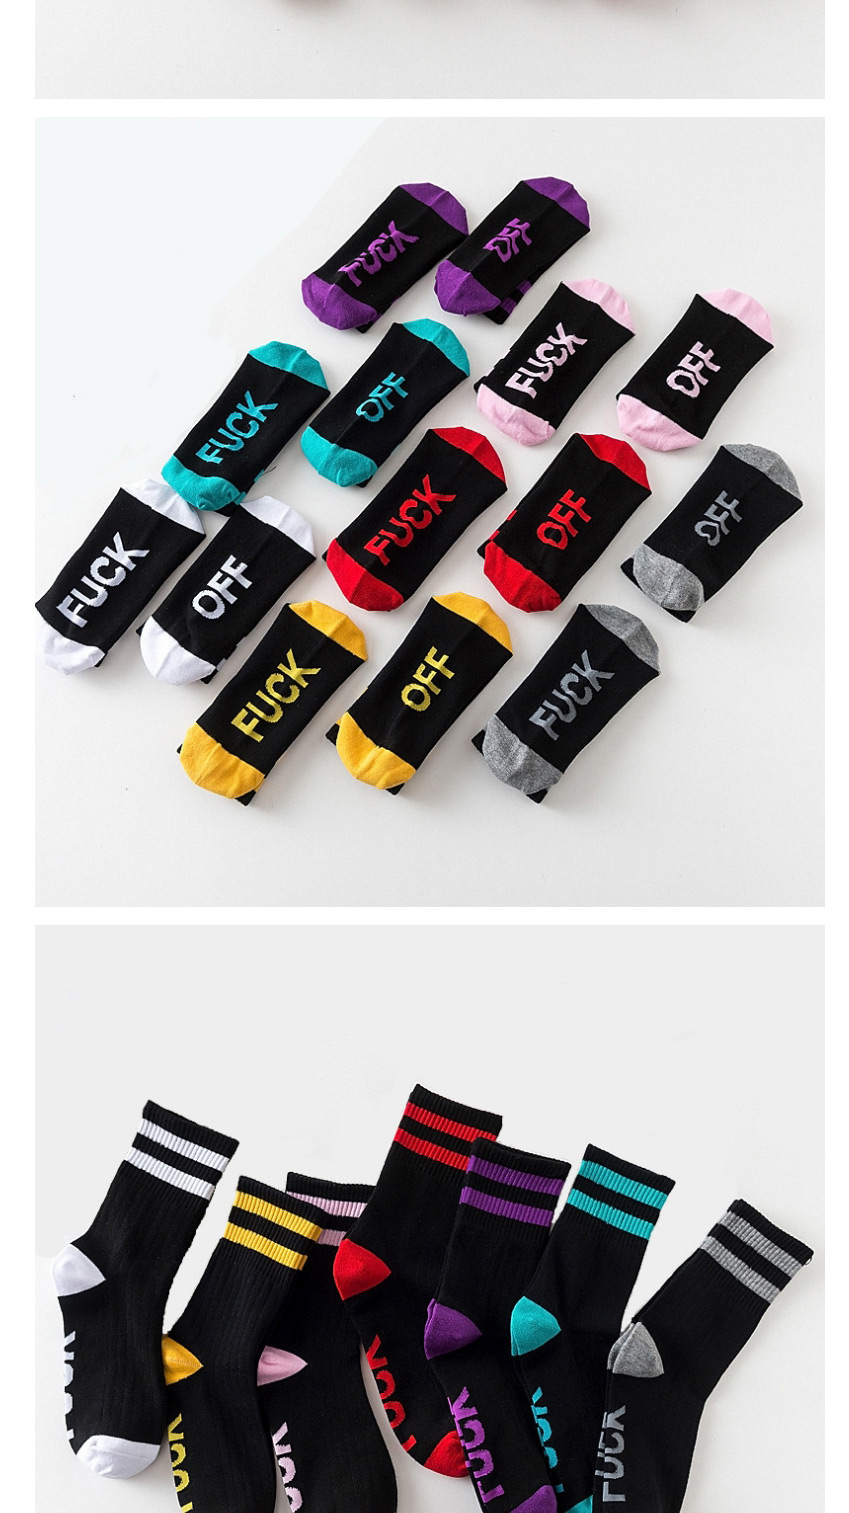 Fashion Black Powder Mens Cotton Socks With Contrasting Letters,Fashion Socks